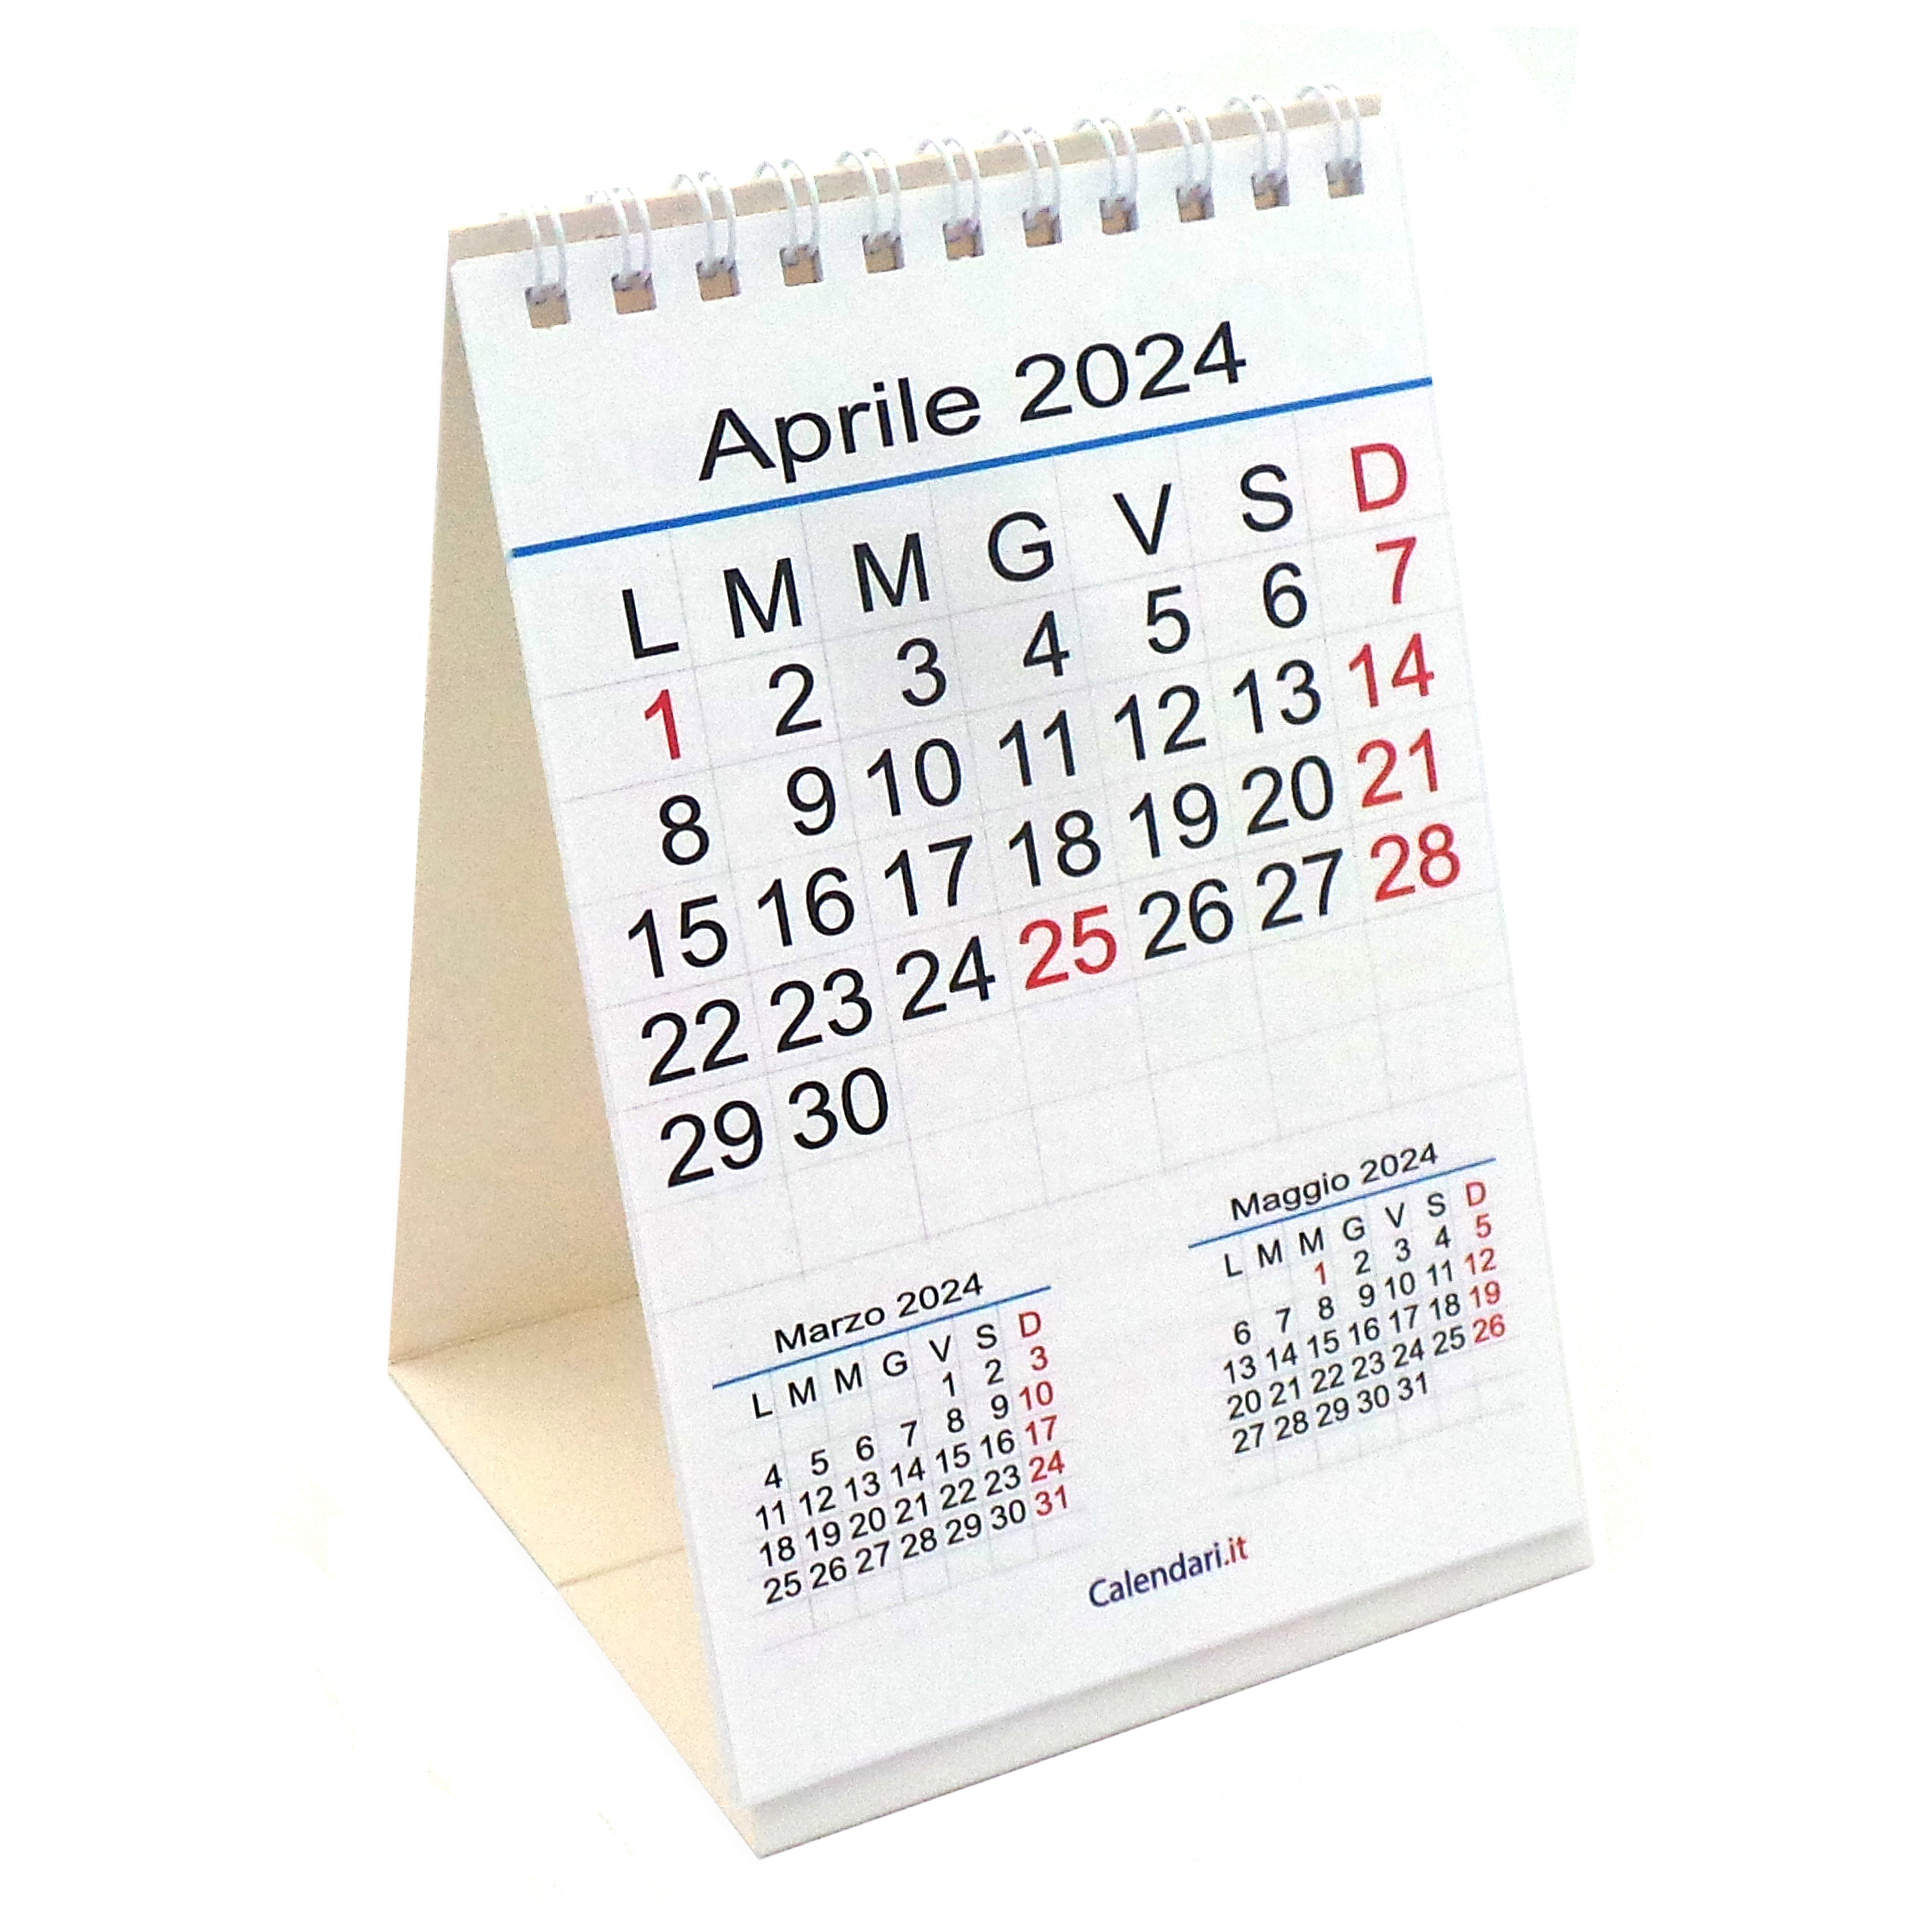 https://www.calendari.it/wp-content/uploads/2023/07/calendario-2024-da-tavolo-con-numeri-grandi-piccolo-calendari-it.jpg